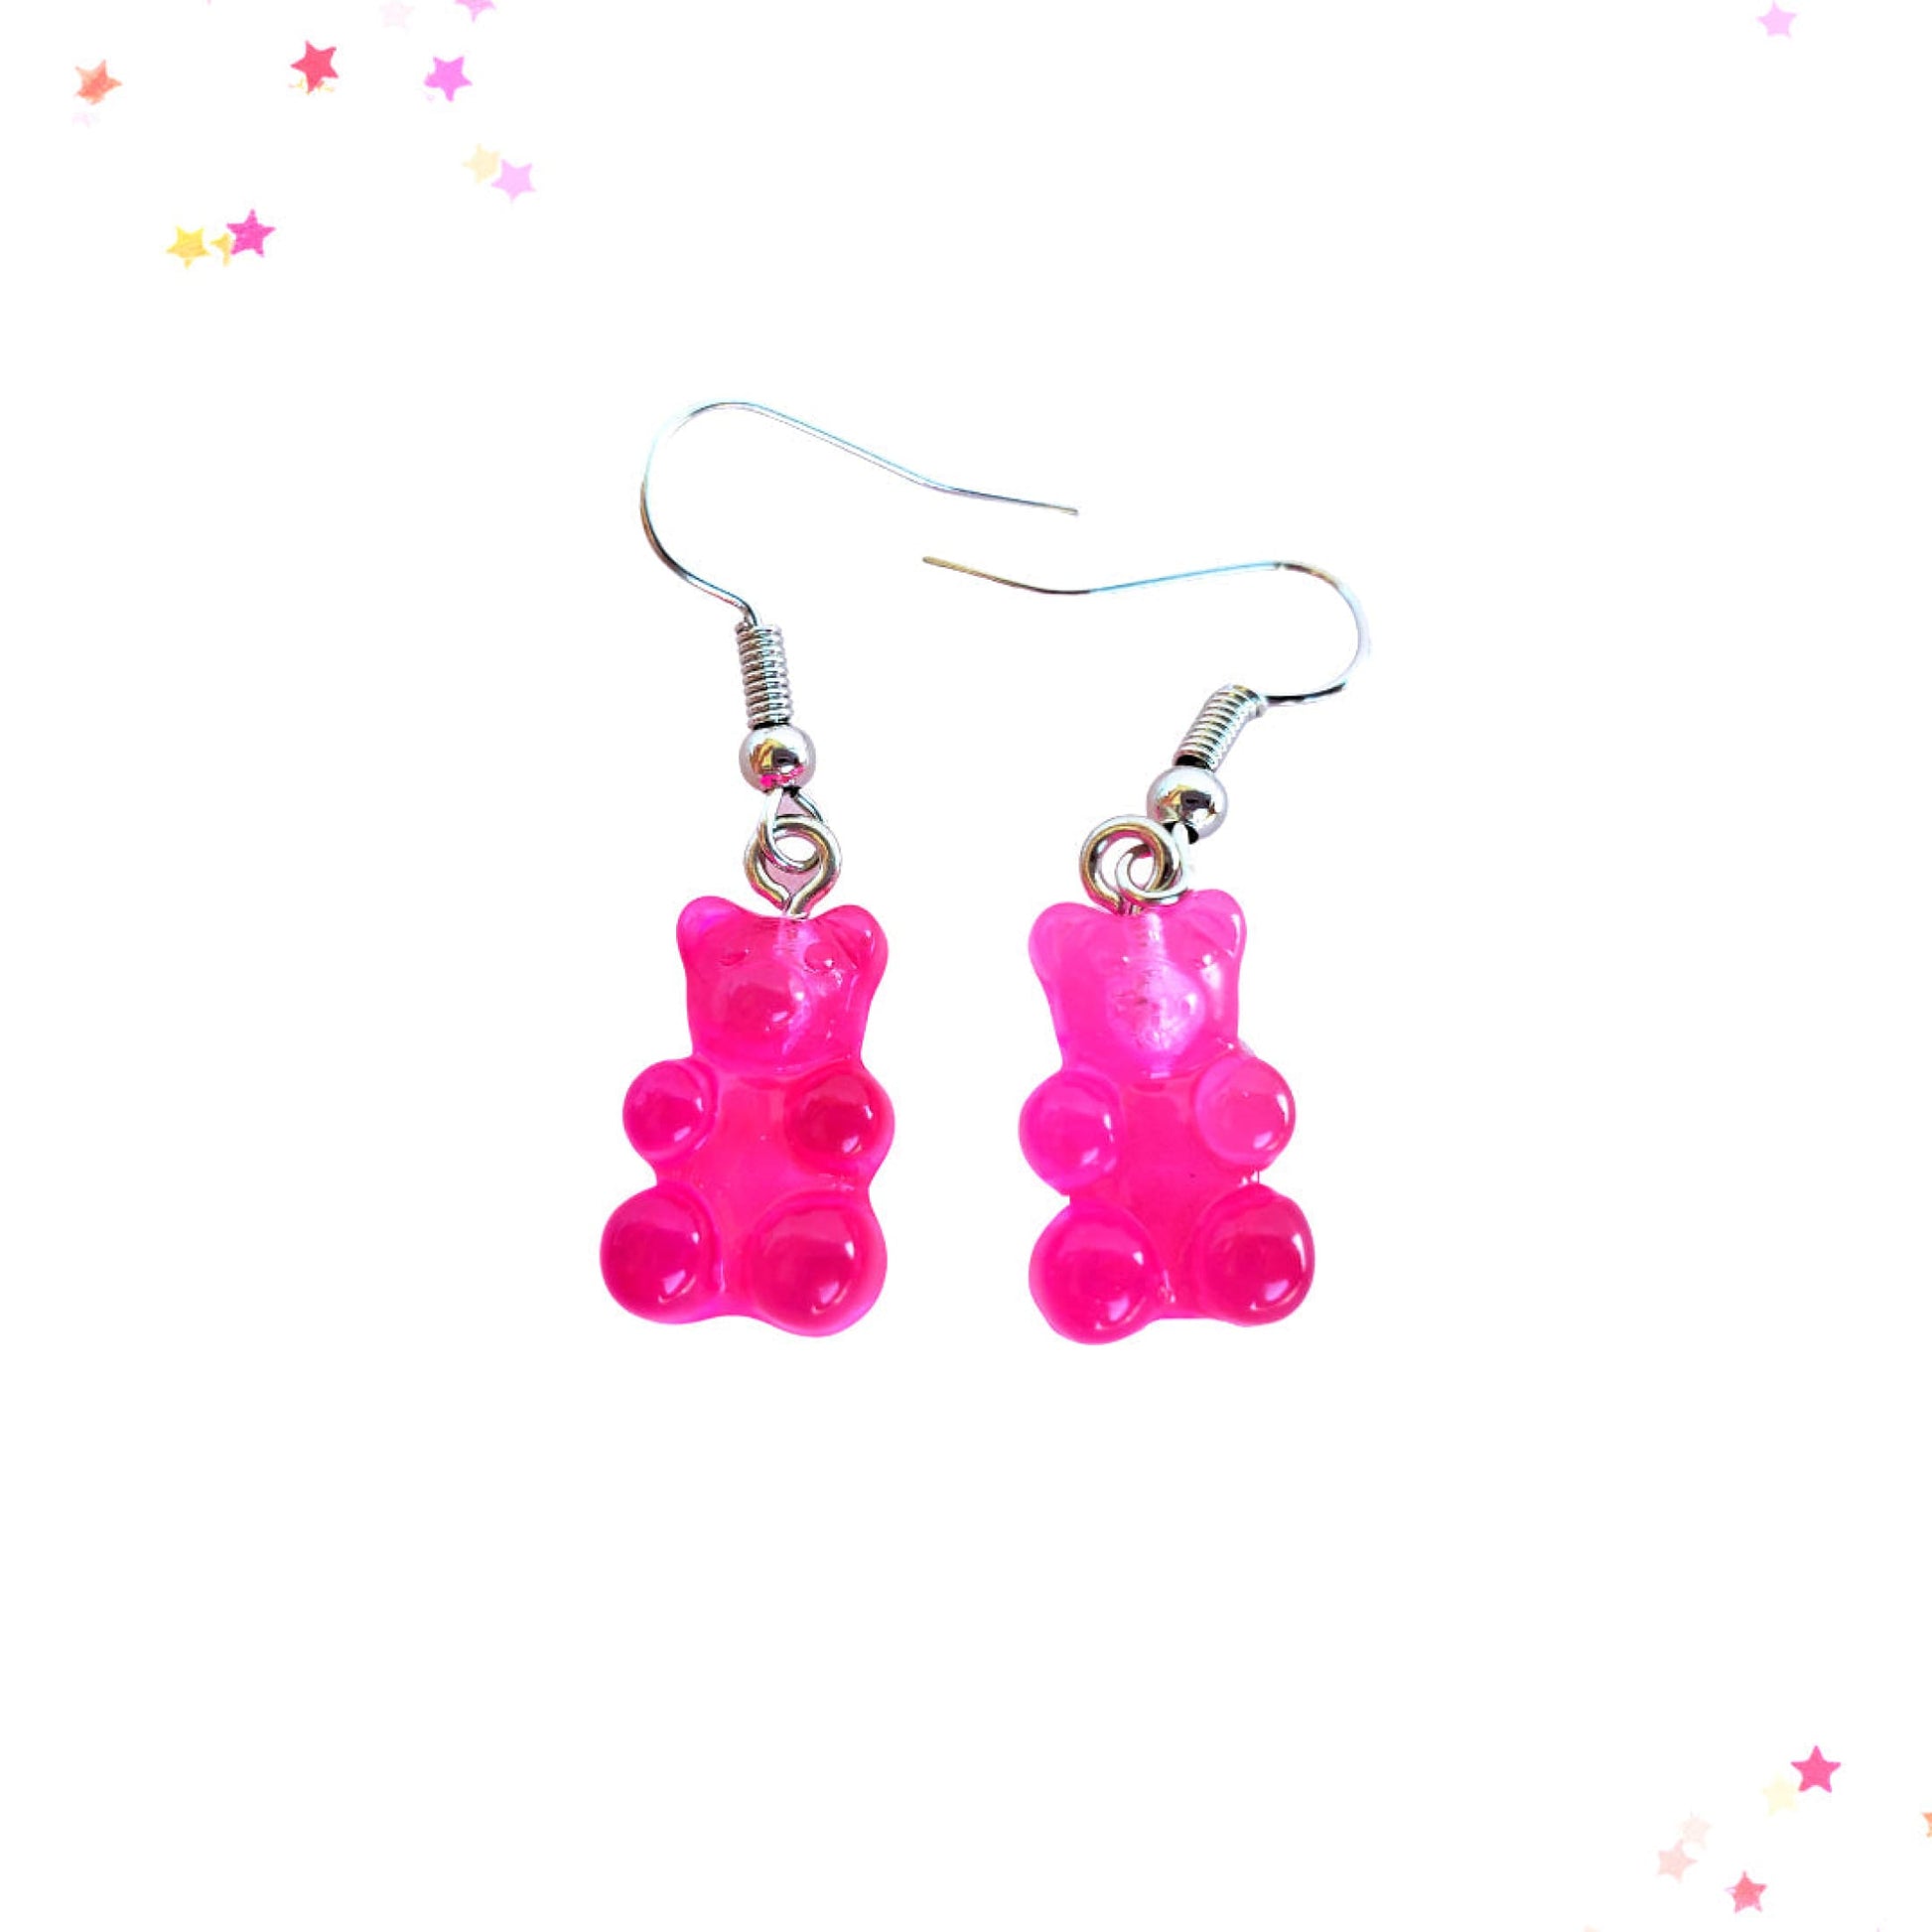 Gummy Bear Drop Earrings in Raspberry Sorbet from Confetti Kitty, Only 3.99